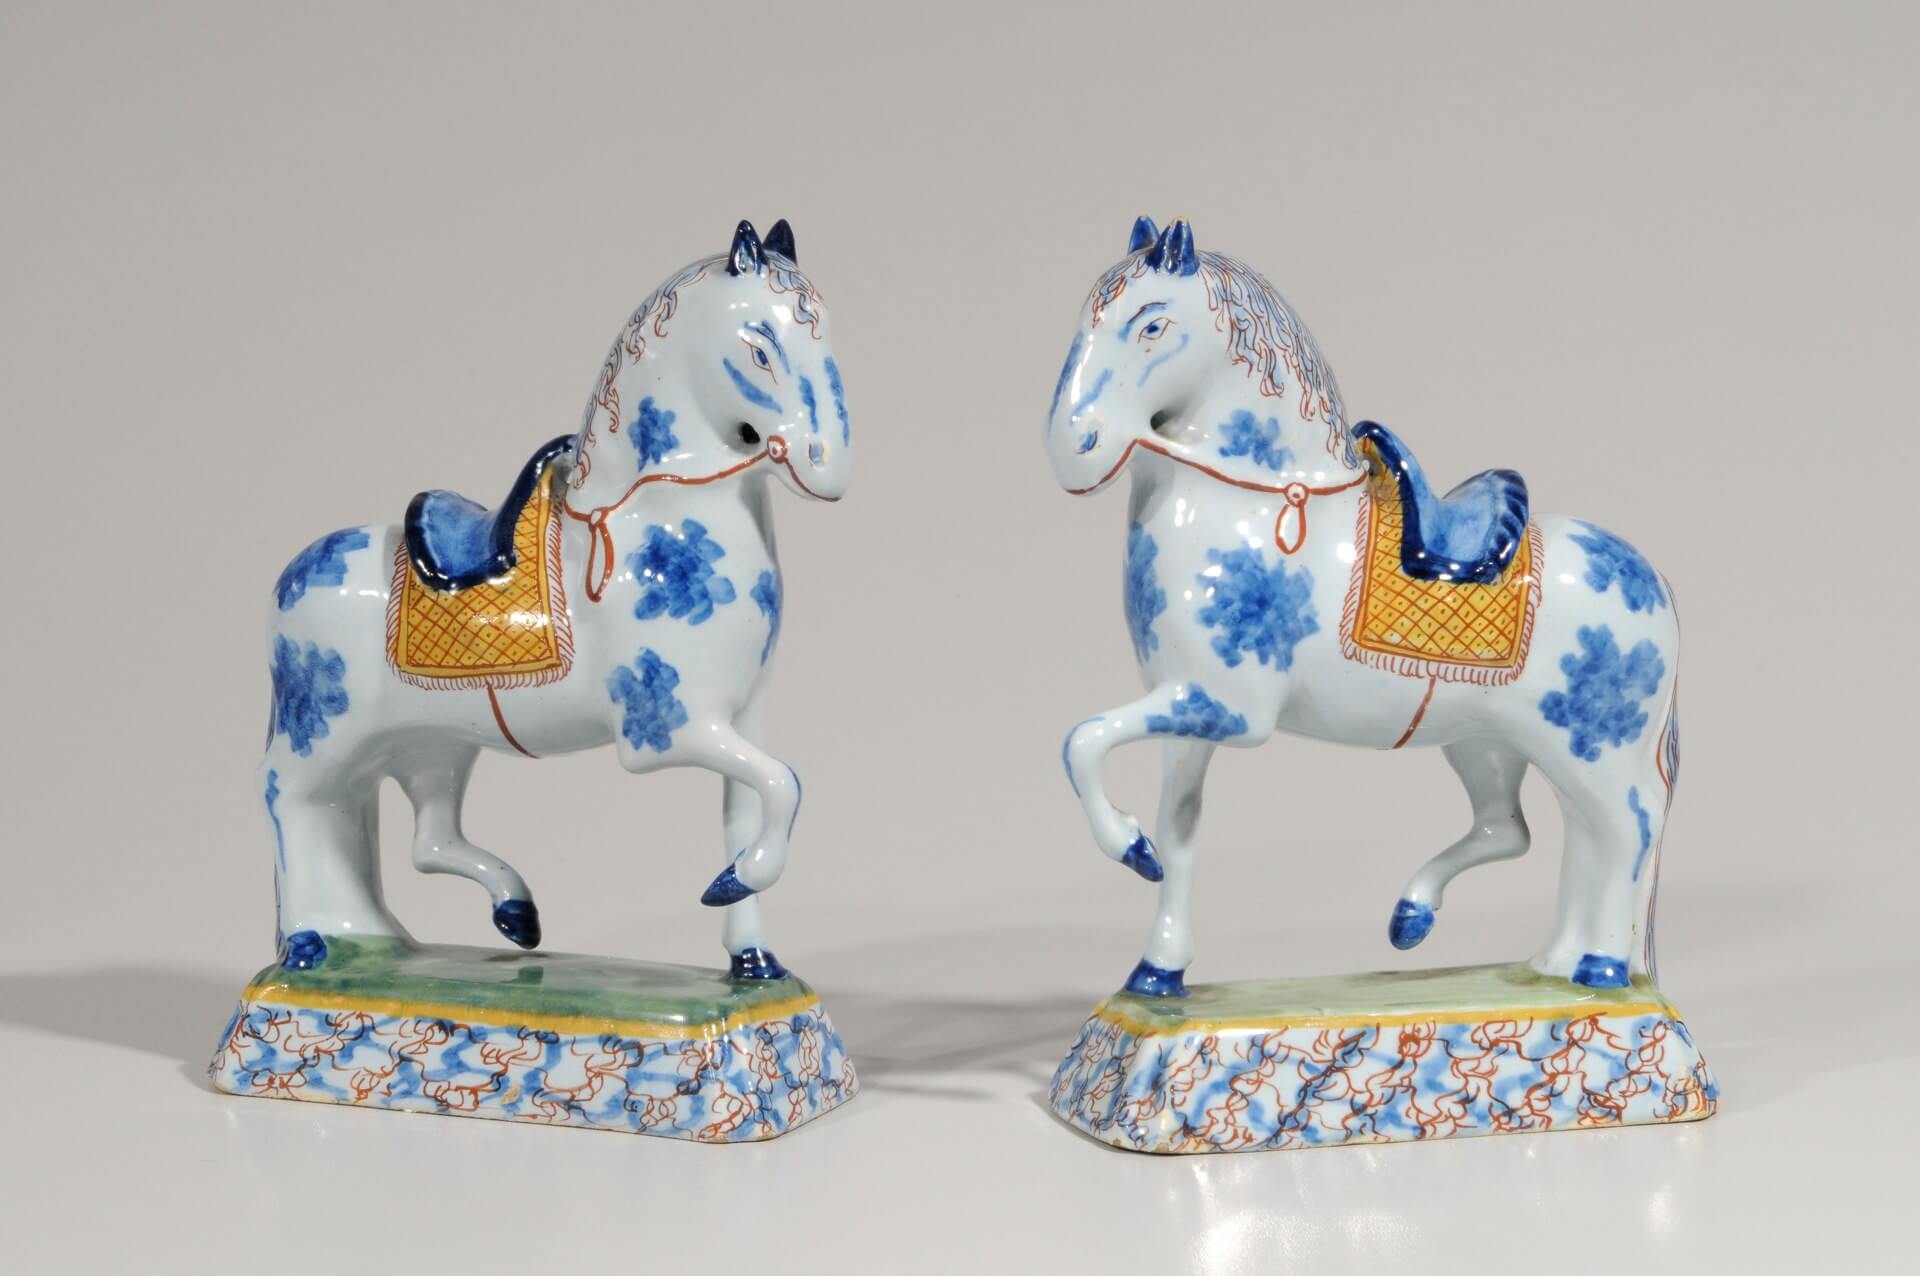 Antique delft figures of horses